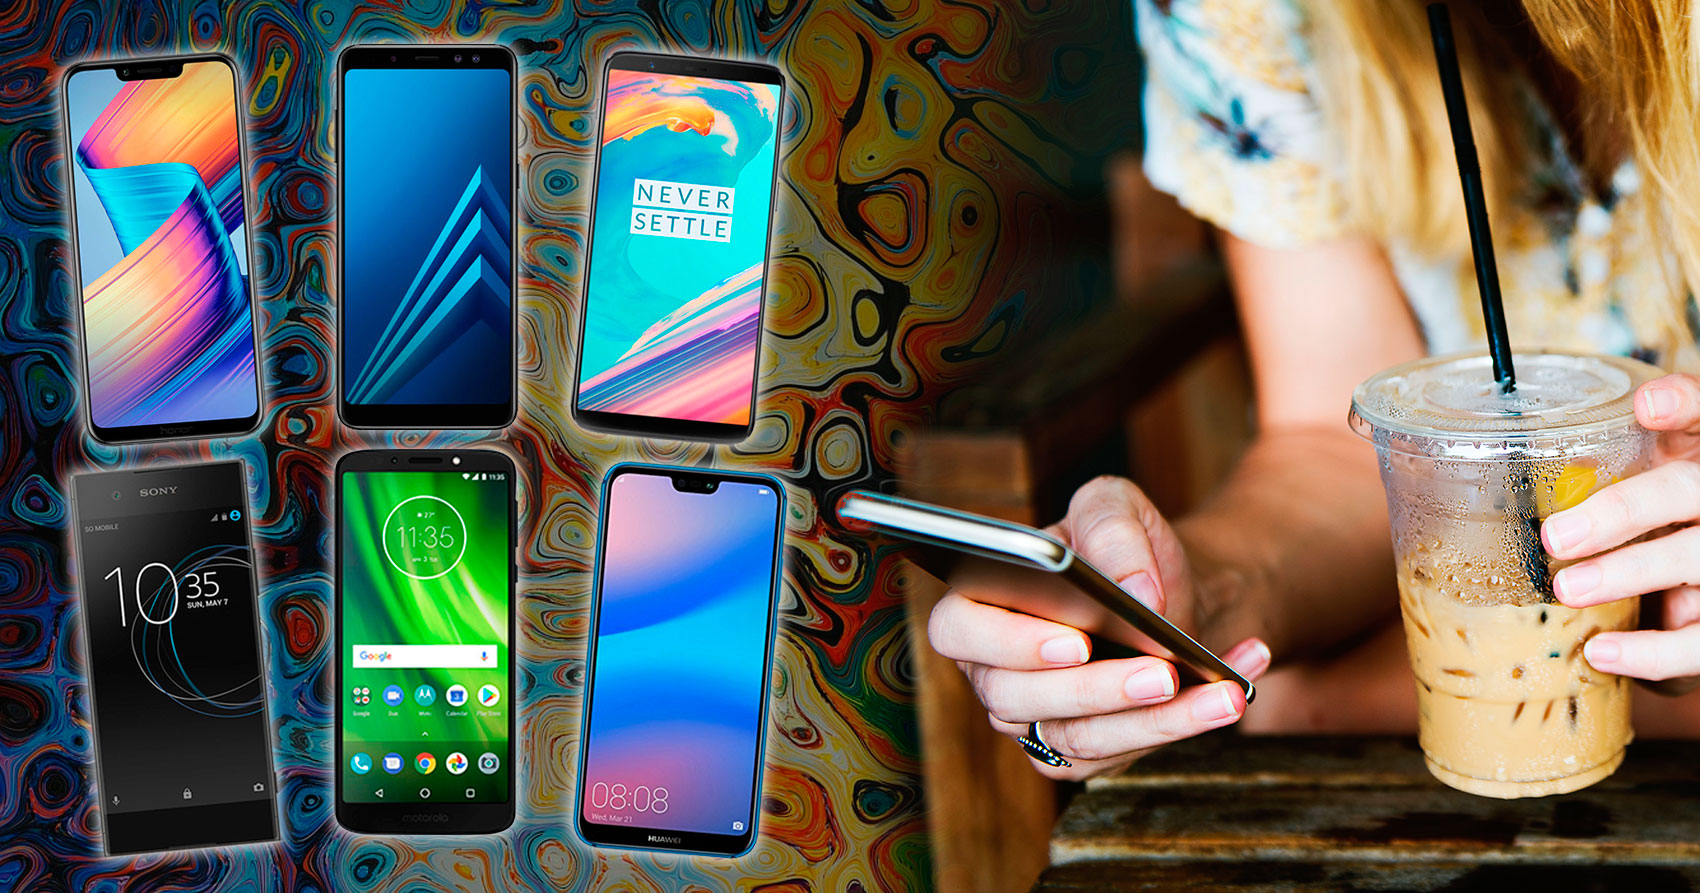 6 teléfonos inteligentes económicos que puedes comprar empezando el 2019 -  Ecosbox